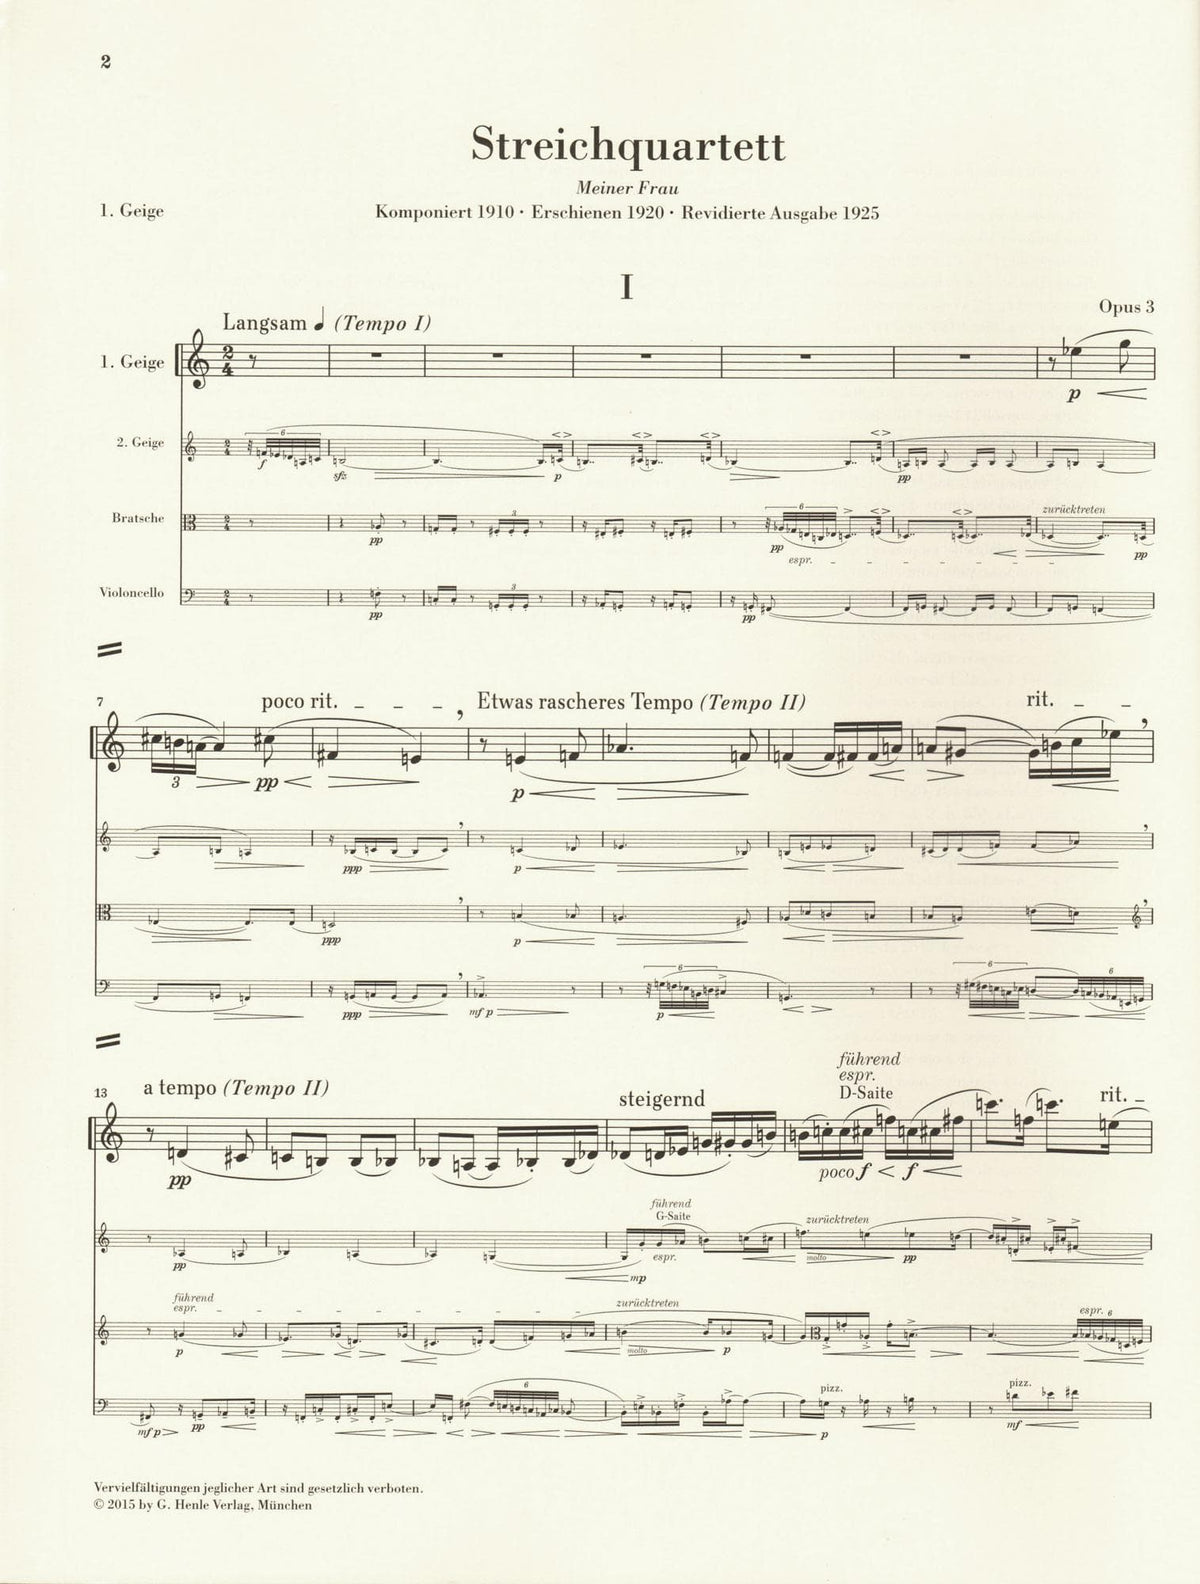 Berg, Alban - String Quartet, Op. 3 - with Parts in Score Form - edited by Ulrich Scheideler - G. Henle Verlag URTEXT